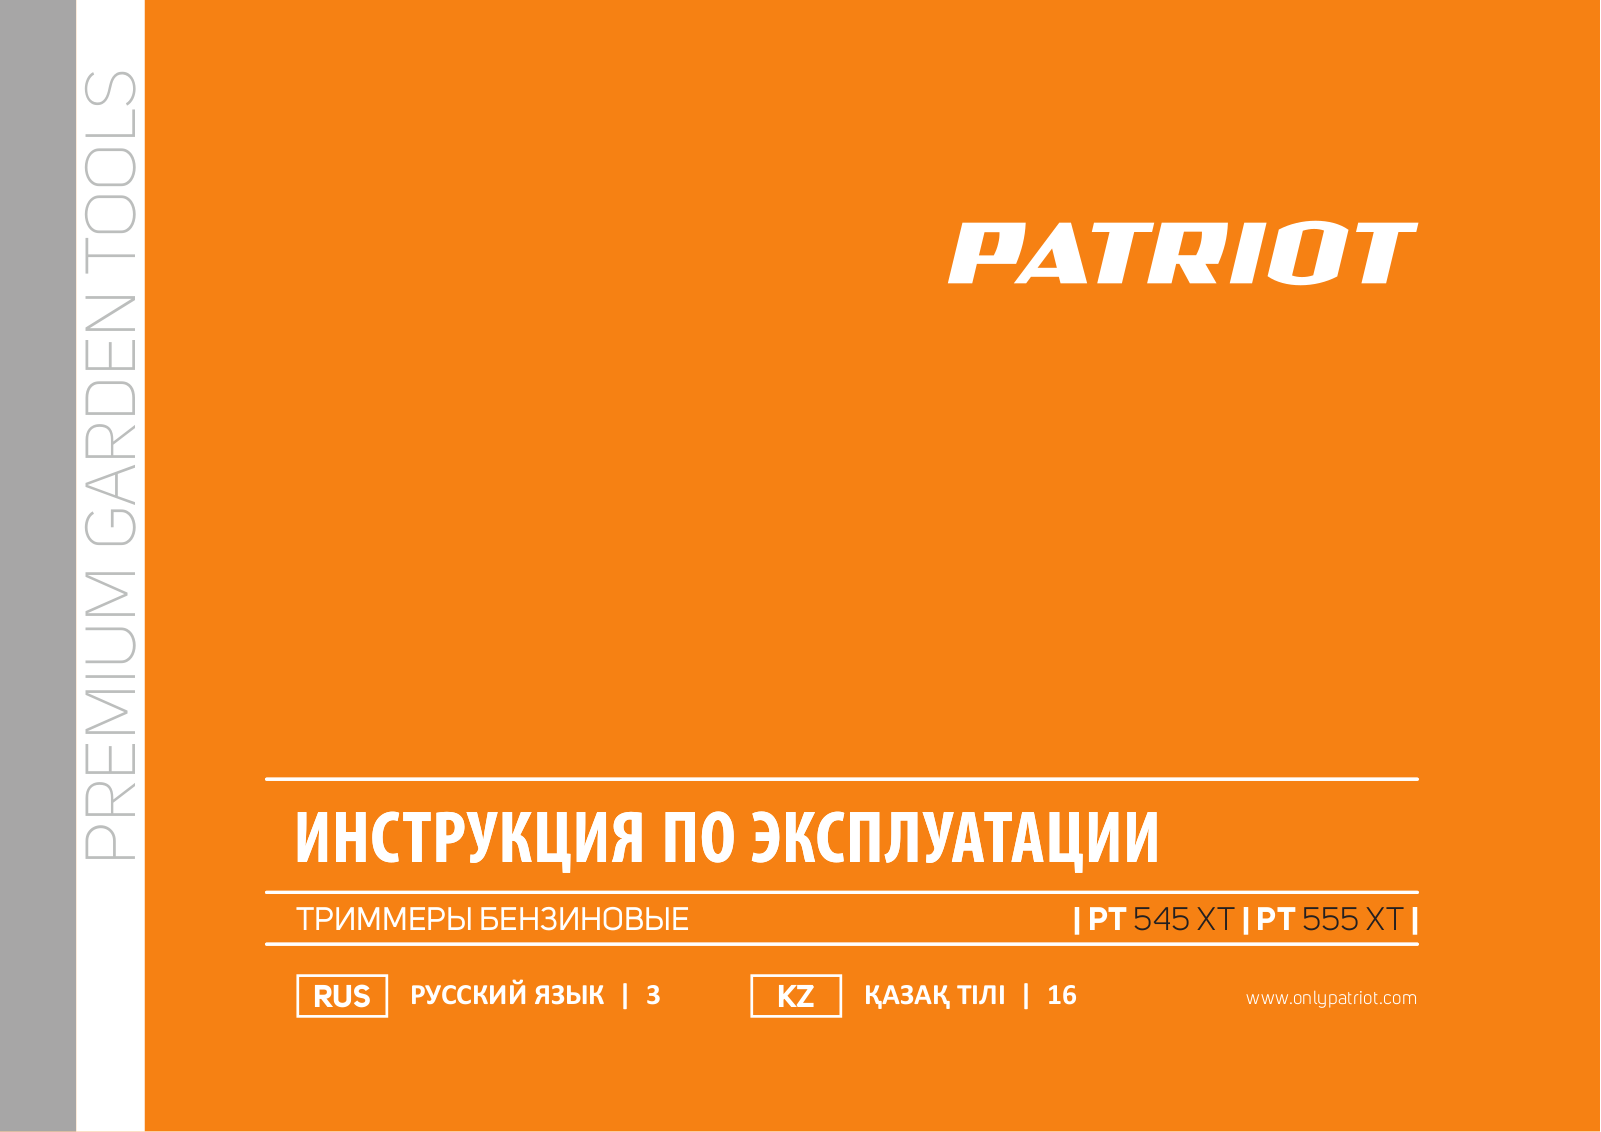 Patriot PT 545 XT, PT 555 XT Manual